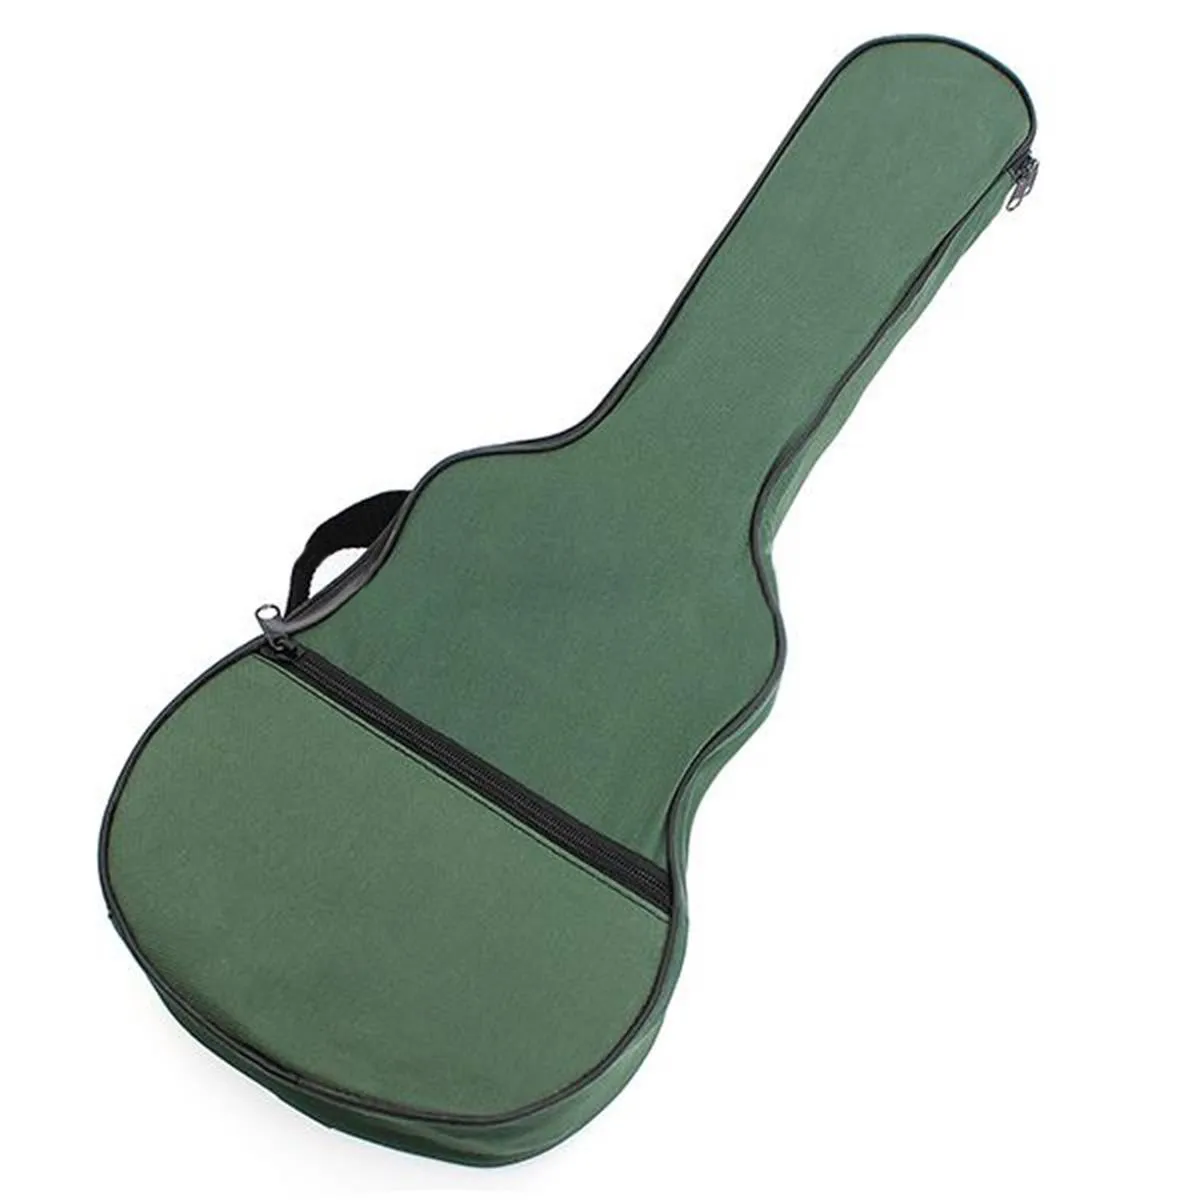 Мягкий черный и зеленый чехол для укулеле на плечо Сумка с музыкальными